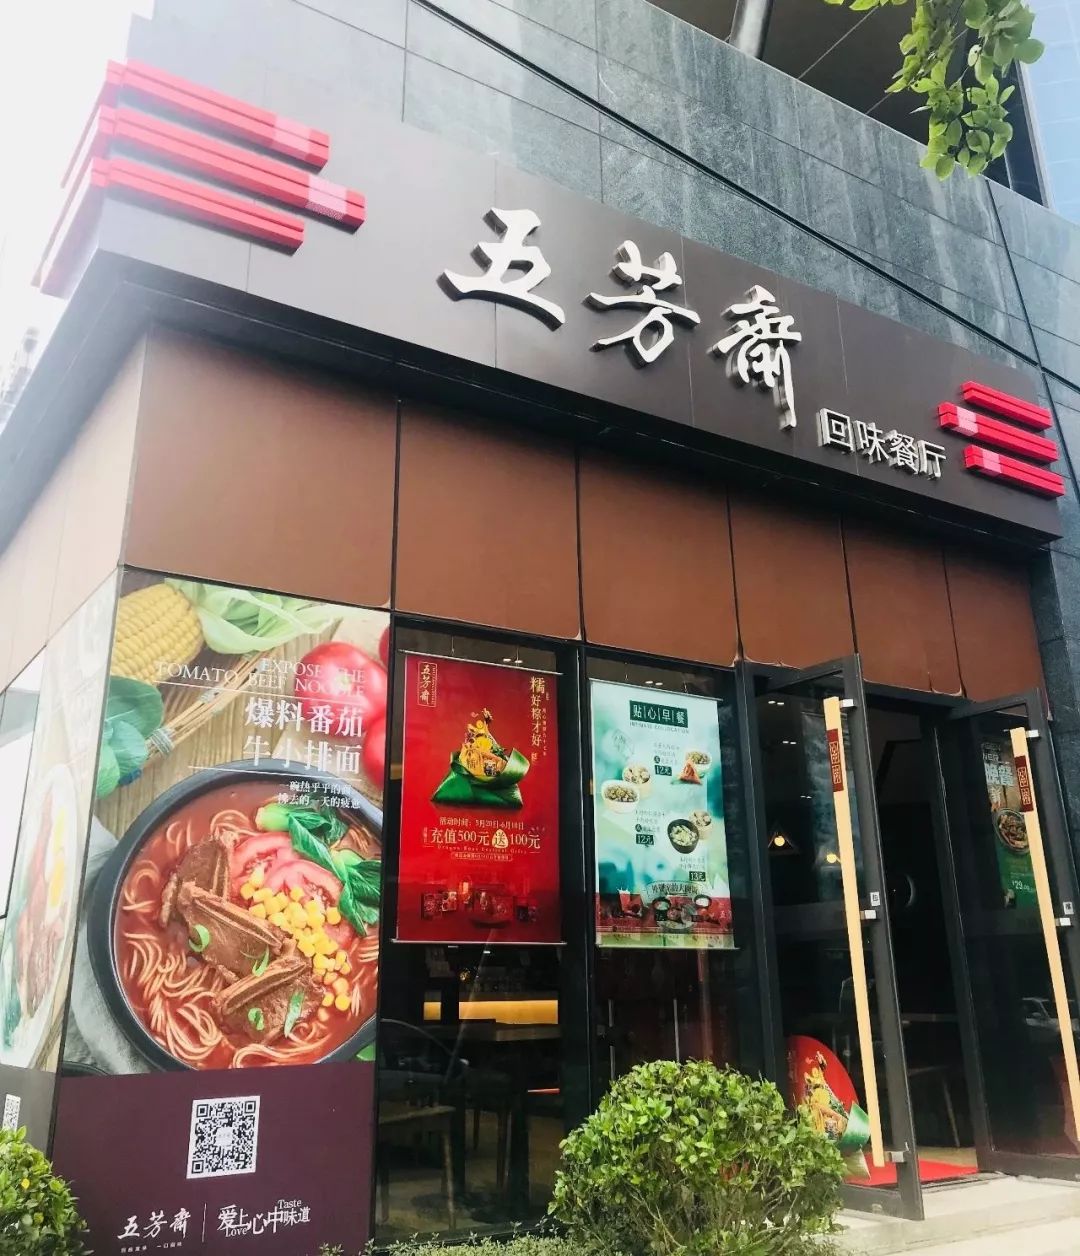 【硅谷商家】中华老字号—五芳斋(回味餐厅)正式开启试营业